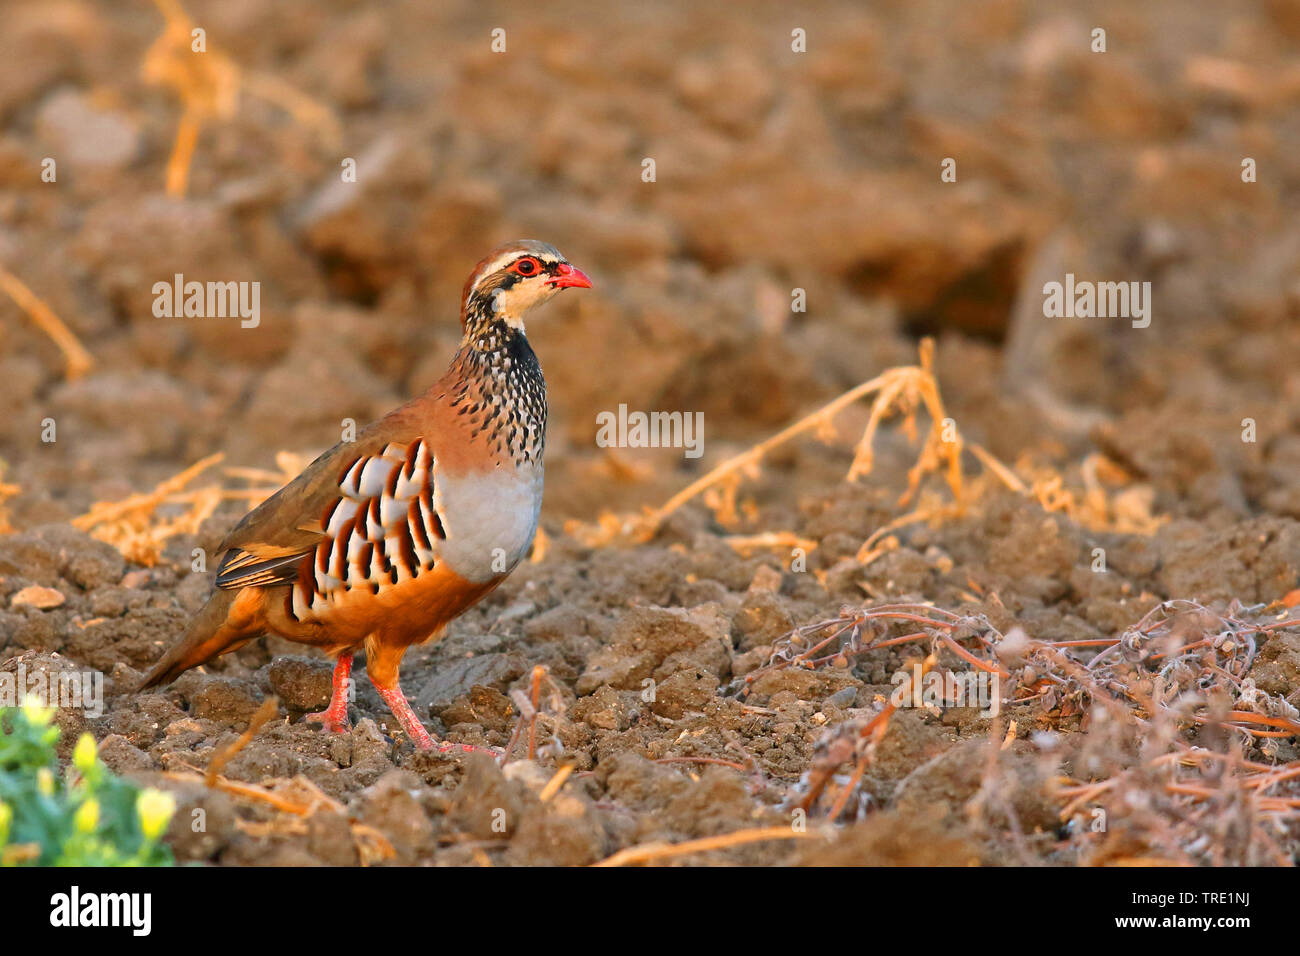 Red-legged partridge (Alectoris rufa), marcher sur un champ, l'Espagne, Tarifa Banque D'Images